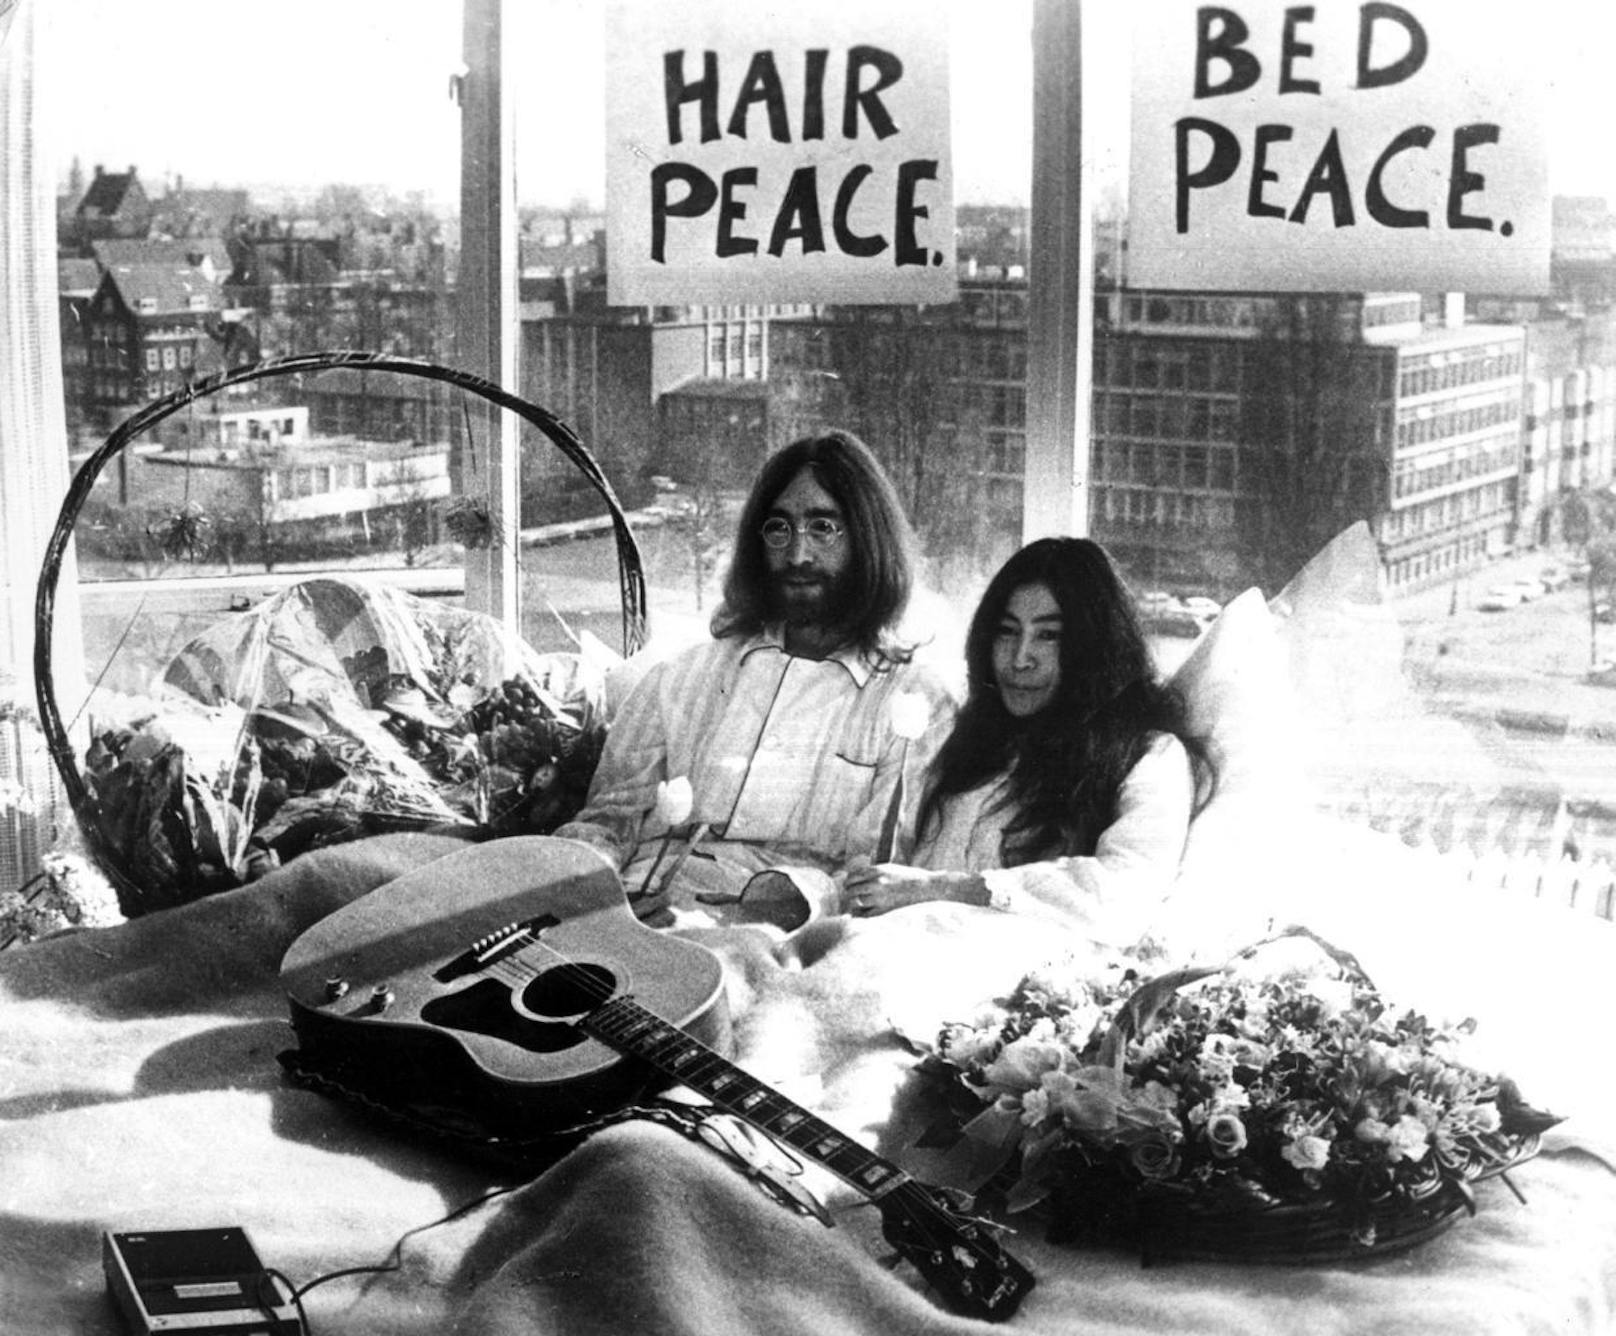 25. März 1969, Amsterdam: John Lennon und Yoko Ono legen sich ins Bett, nennen das "Bed-in for Peace" und sorgen mit ihrer Aktion für einen Skandal

Yoko und John wussten, dass ihre Hochzeit Schlagzeilen macht. Deshalb nutzten sie ihre Hochzeitsreise, um sich für Weltfrieden und gegen den Vietnamkrieg einzusetzen. 

Sie verbrachten zweimal je eine Woche in Amsterdam und Motreal im Bett: Im Amsterdam Hilton Hotel waren sie vom 25.3. bis 31.3. Bett des Zimmers 702. Jeden Tag zwischen 9 und 21 Uhr waren Journalisten eingeladen, auf Besuch zu kommen. 

